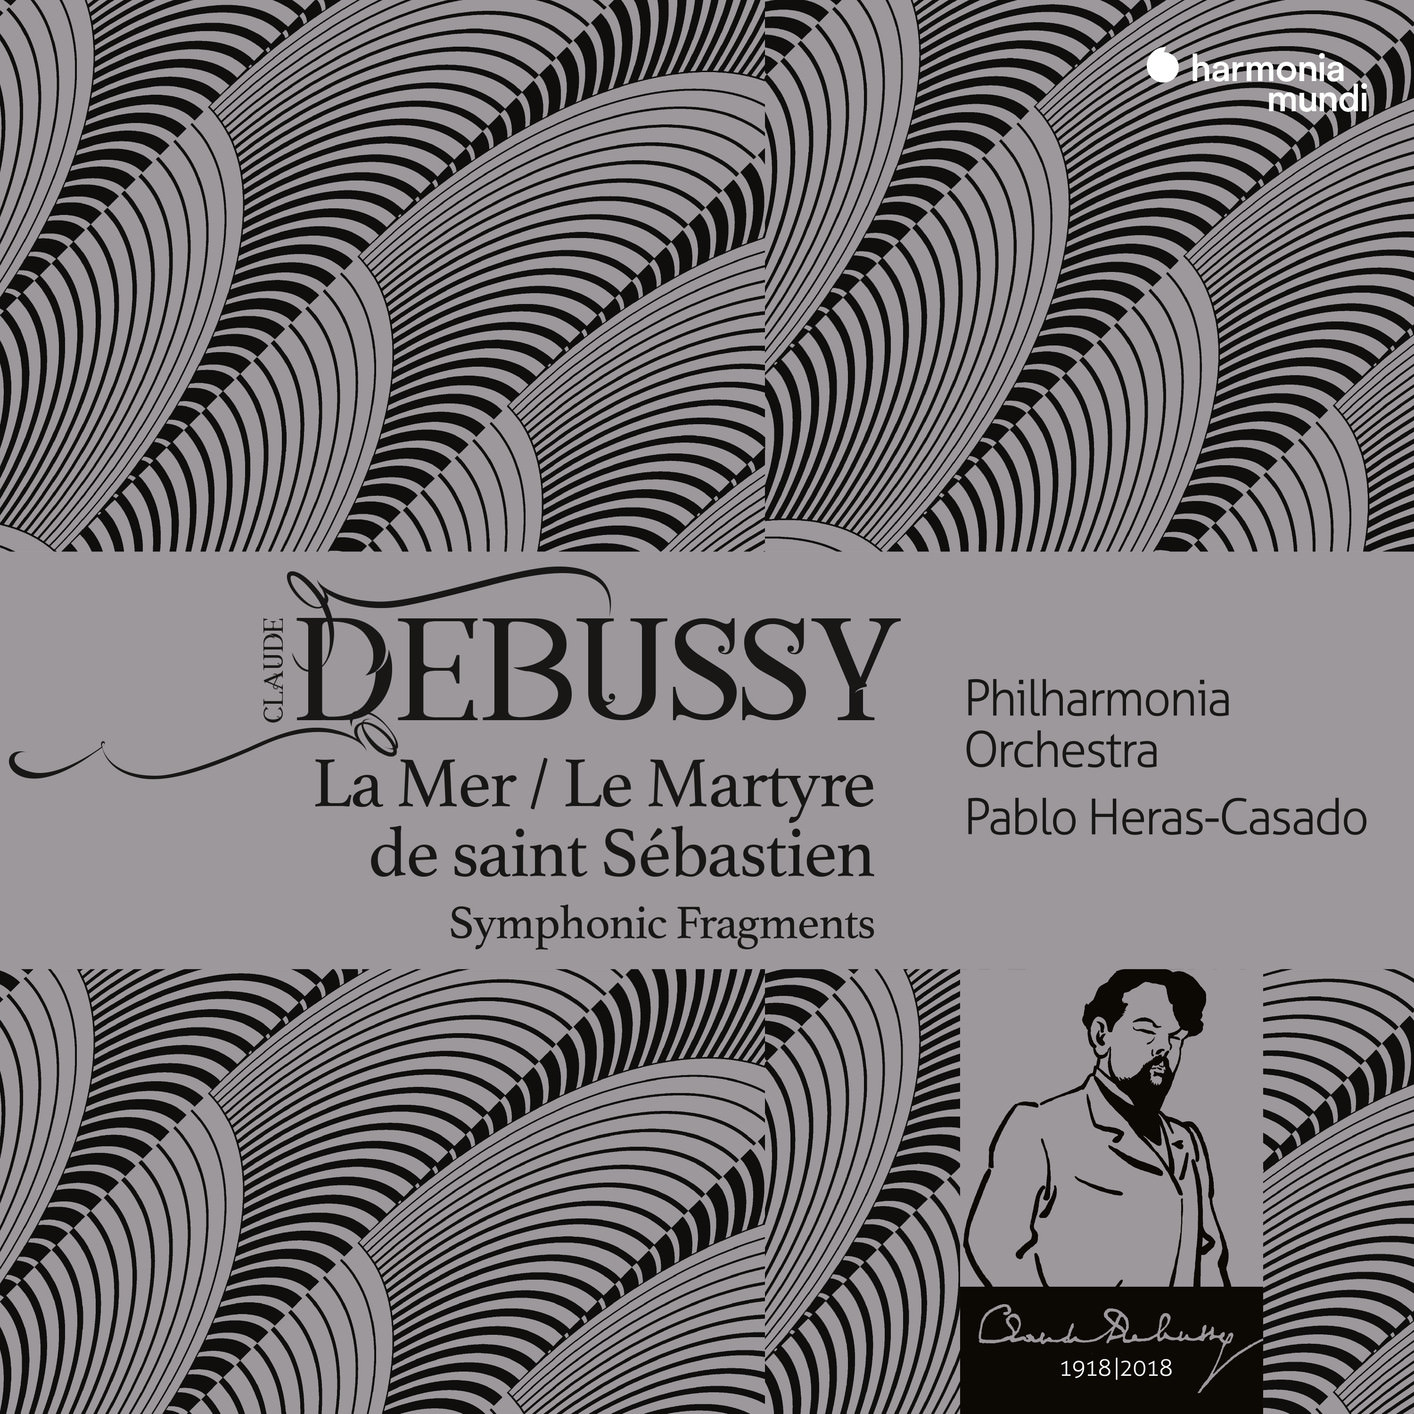 Philharmonia Orchestra & Pablo Heras-Casado – Debussy: La Mer, Le Martyre de saint Sebastien (2018) [FLAC 24bit/48kHz]